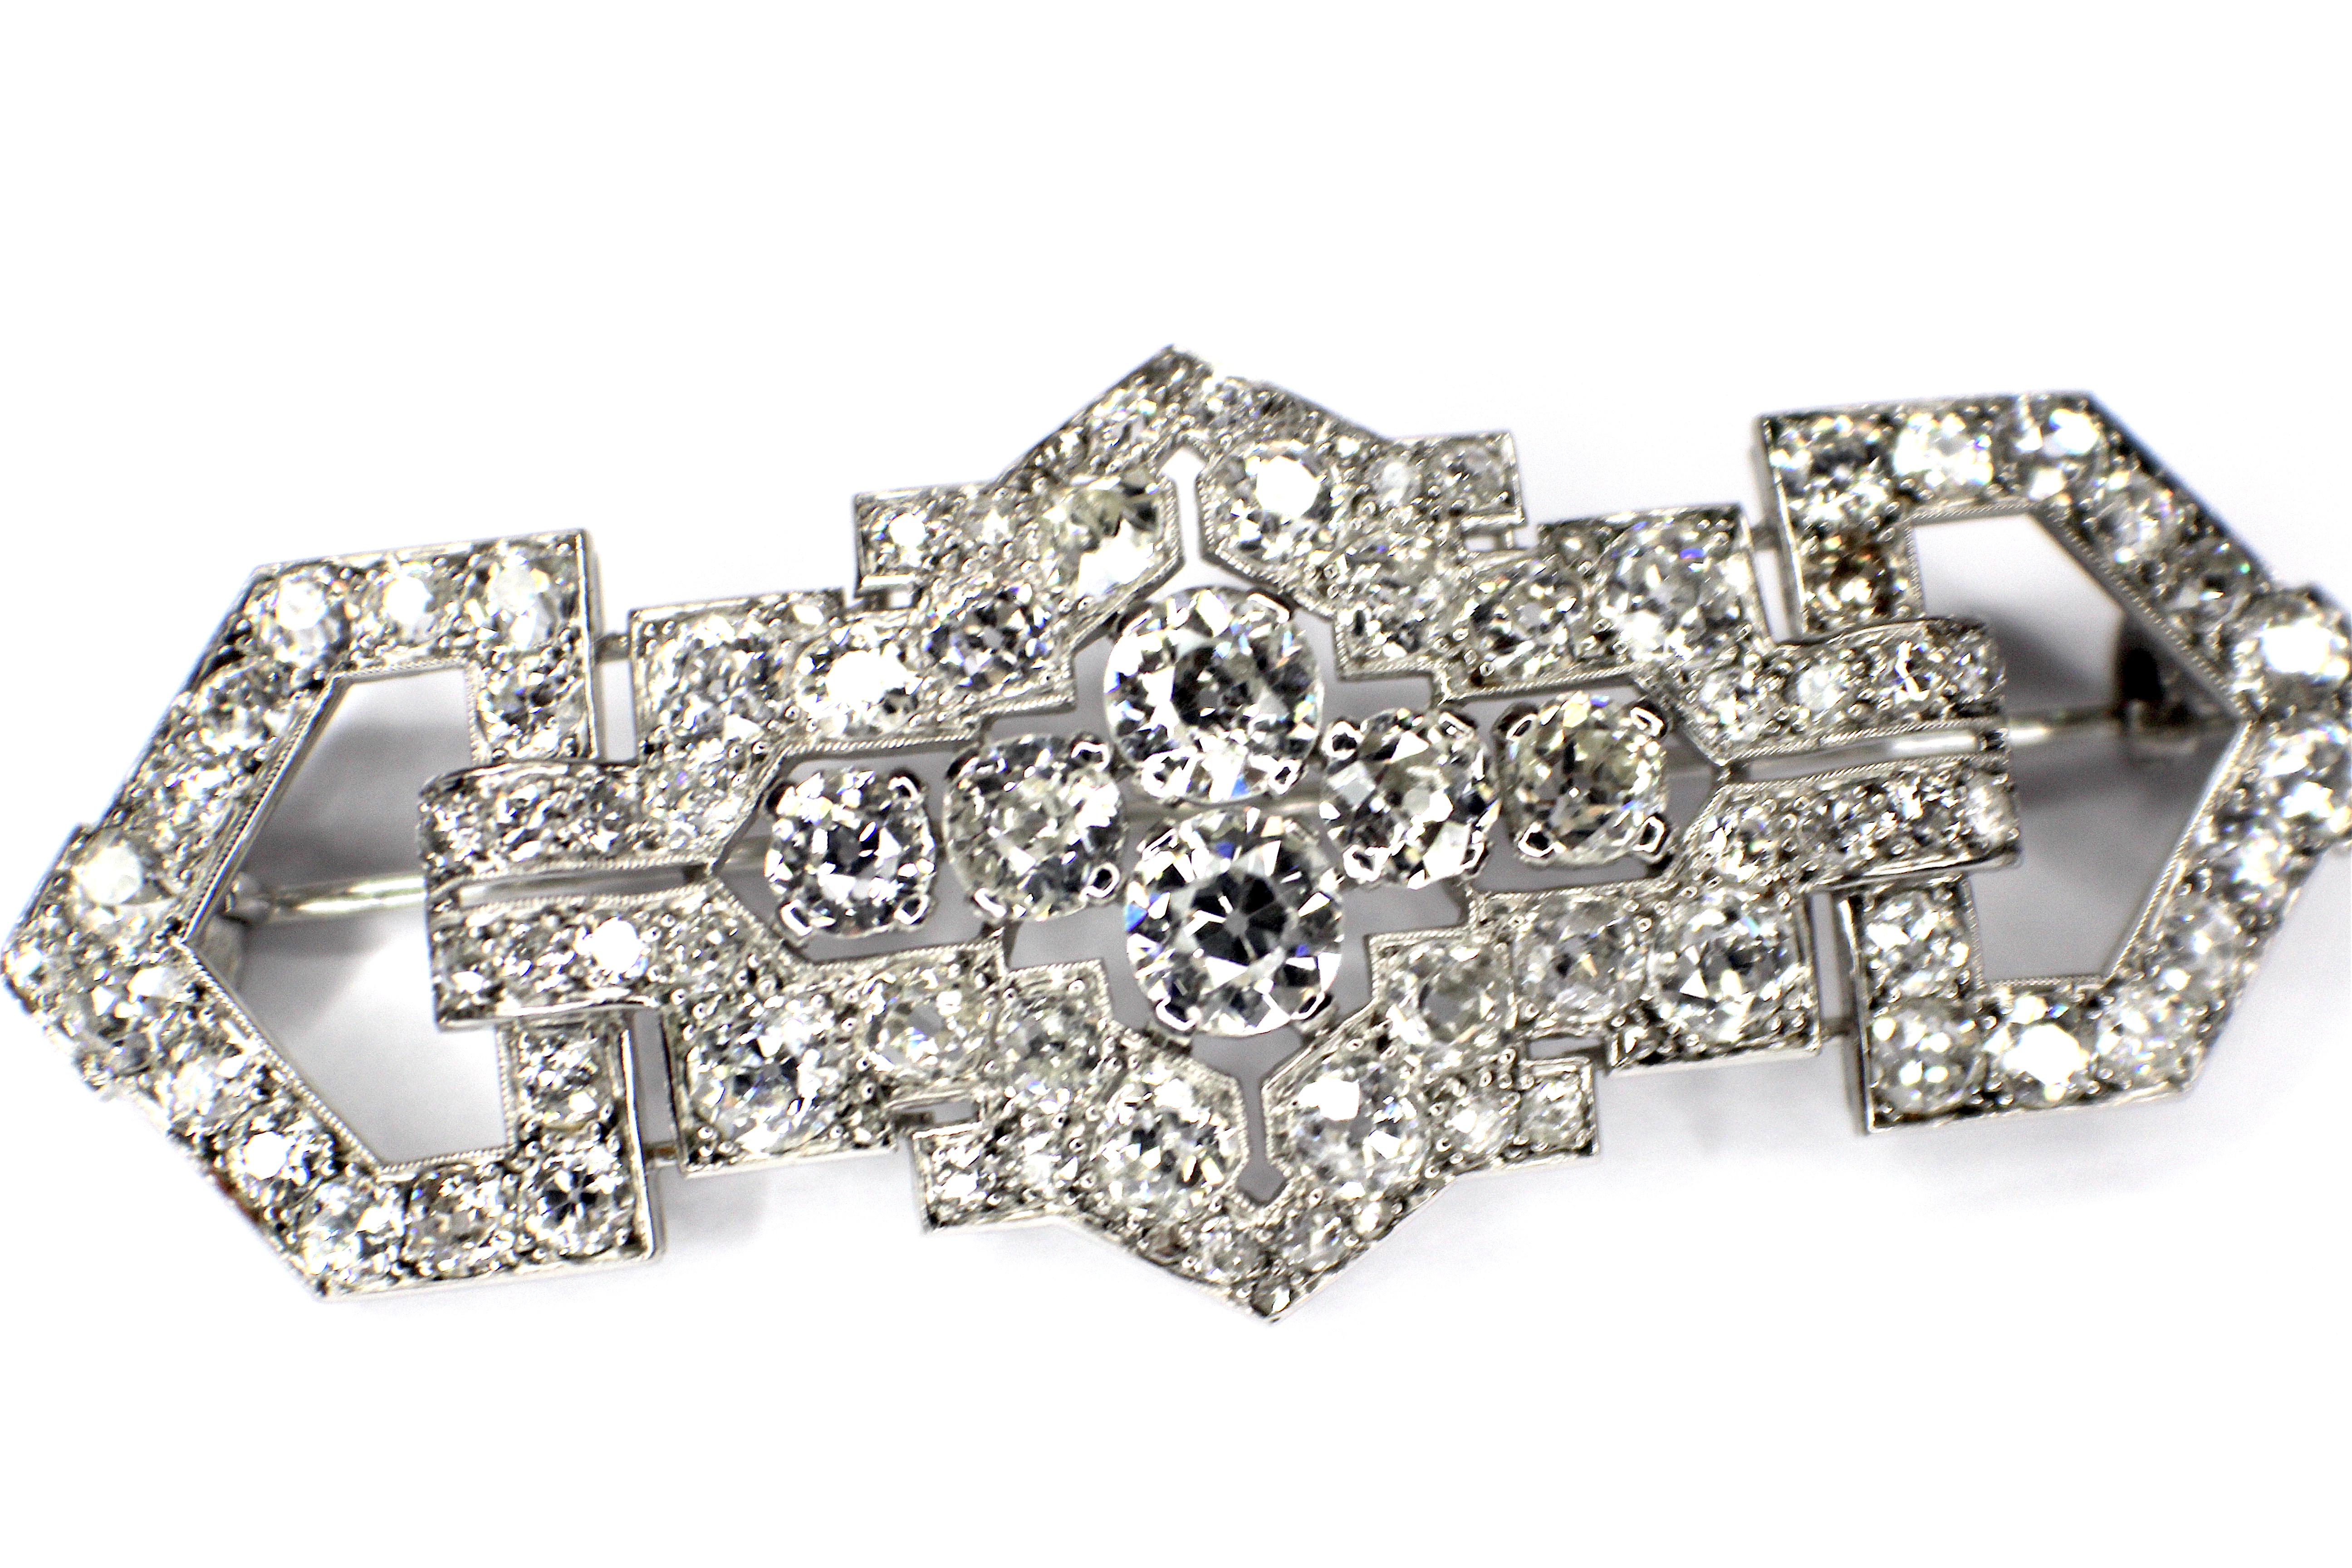 Gemolithos, Art Deco Diamantbrosche, Französisch, 1928 von Cartier. Diamanten est. Insgesamt 9,3ct F-G/VVS-Si, Maße: 65x26mm, Gewicht: 15.38gr. Platin